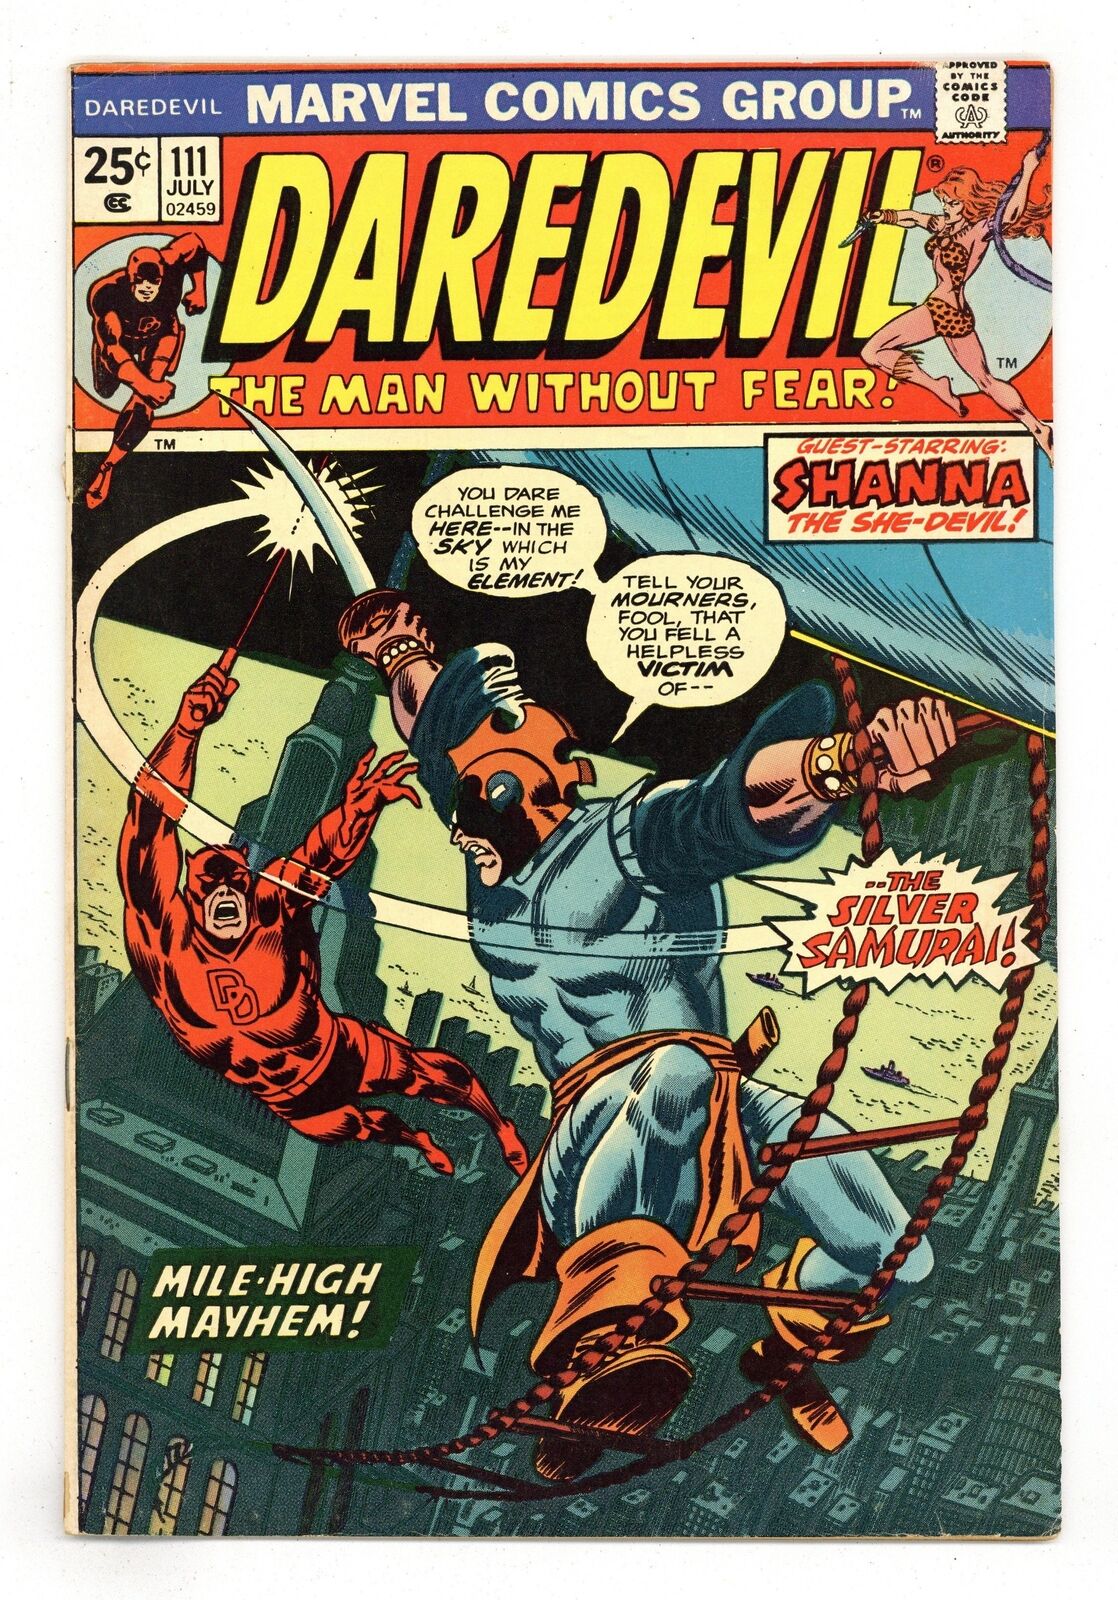 Daredevil #111 VG/FN 5.0 1974 1st app. Silver Samurai